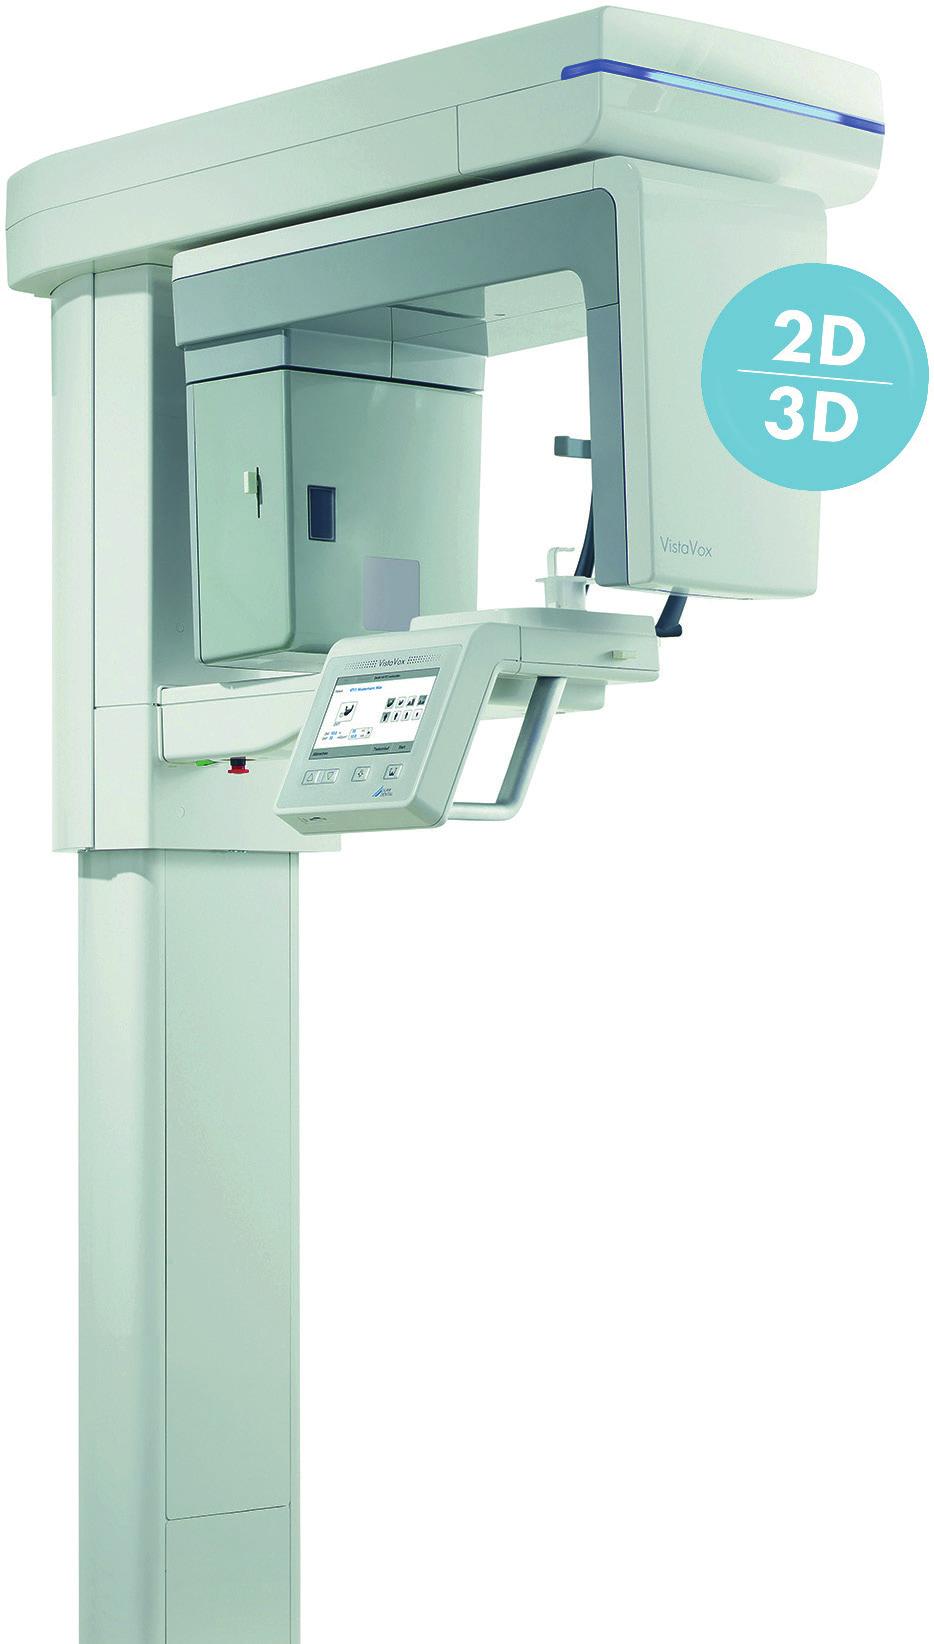 Herstellerinfo // Produkte Neues 3-D-Röntgensystem mit mehr Volumen Für eine präzise Diagnostik ist eine bestmögliche Bildgebung gefragt. Das Familienunternehmen Dürr Dental kommt diesem Wunsch nach.